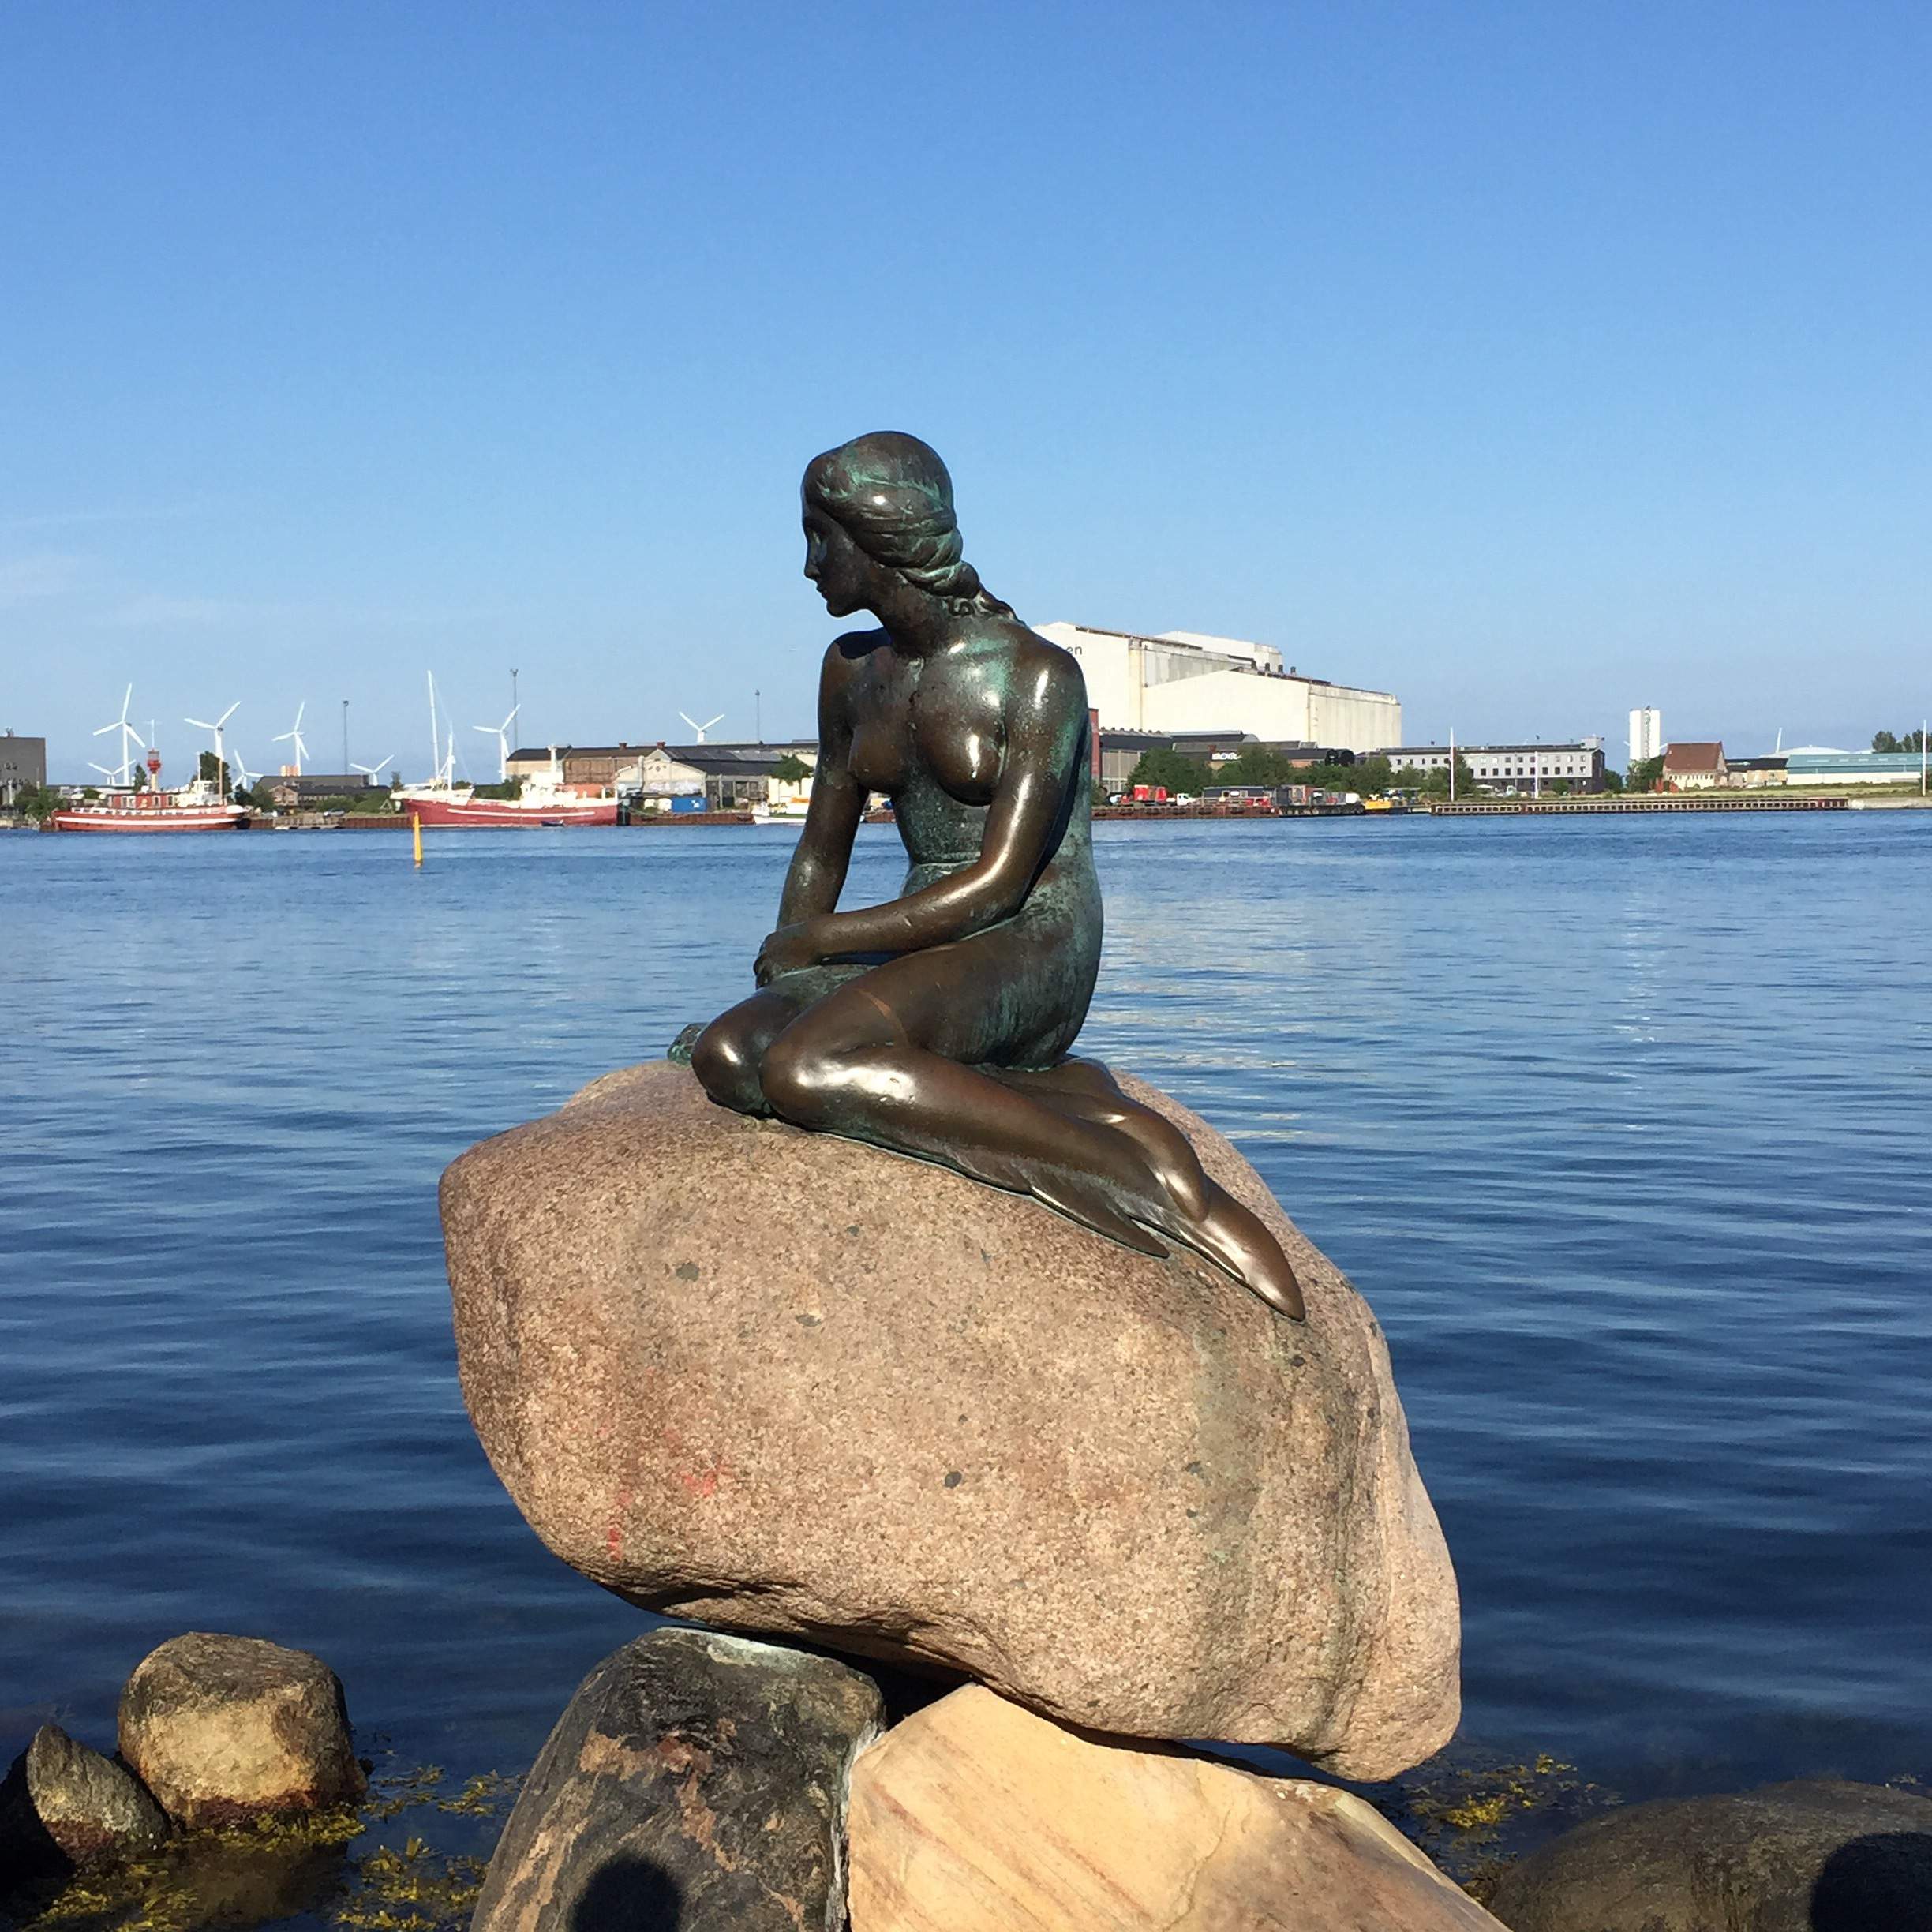 Autokarowe zwiedzanie miasta: symbol Kopenhagi – syrenka, fontanna Gefion, rezydencja królewska Amalienborg.